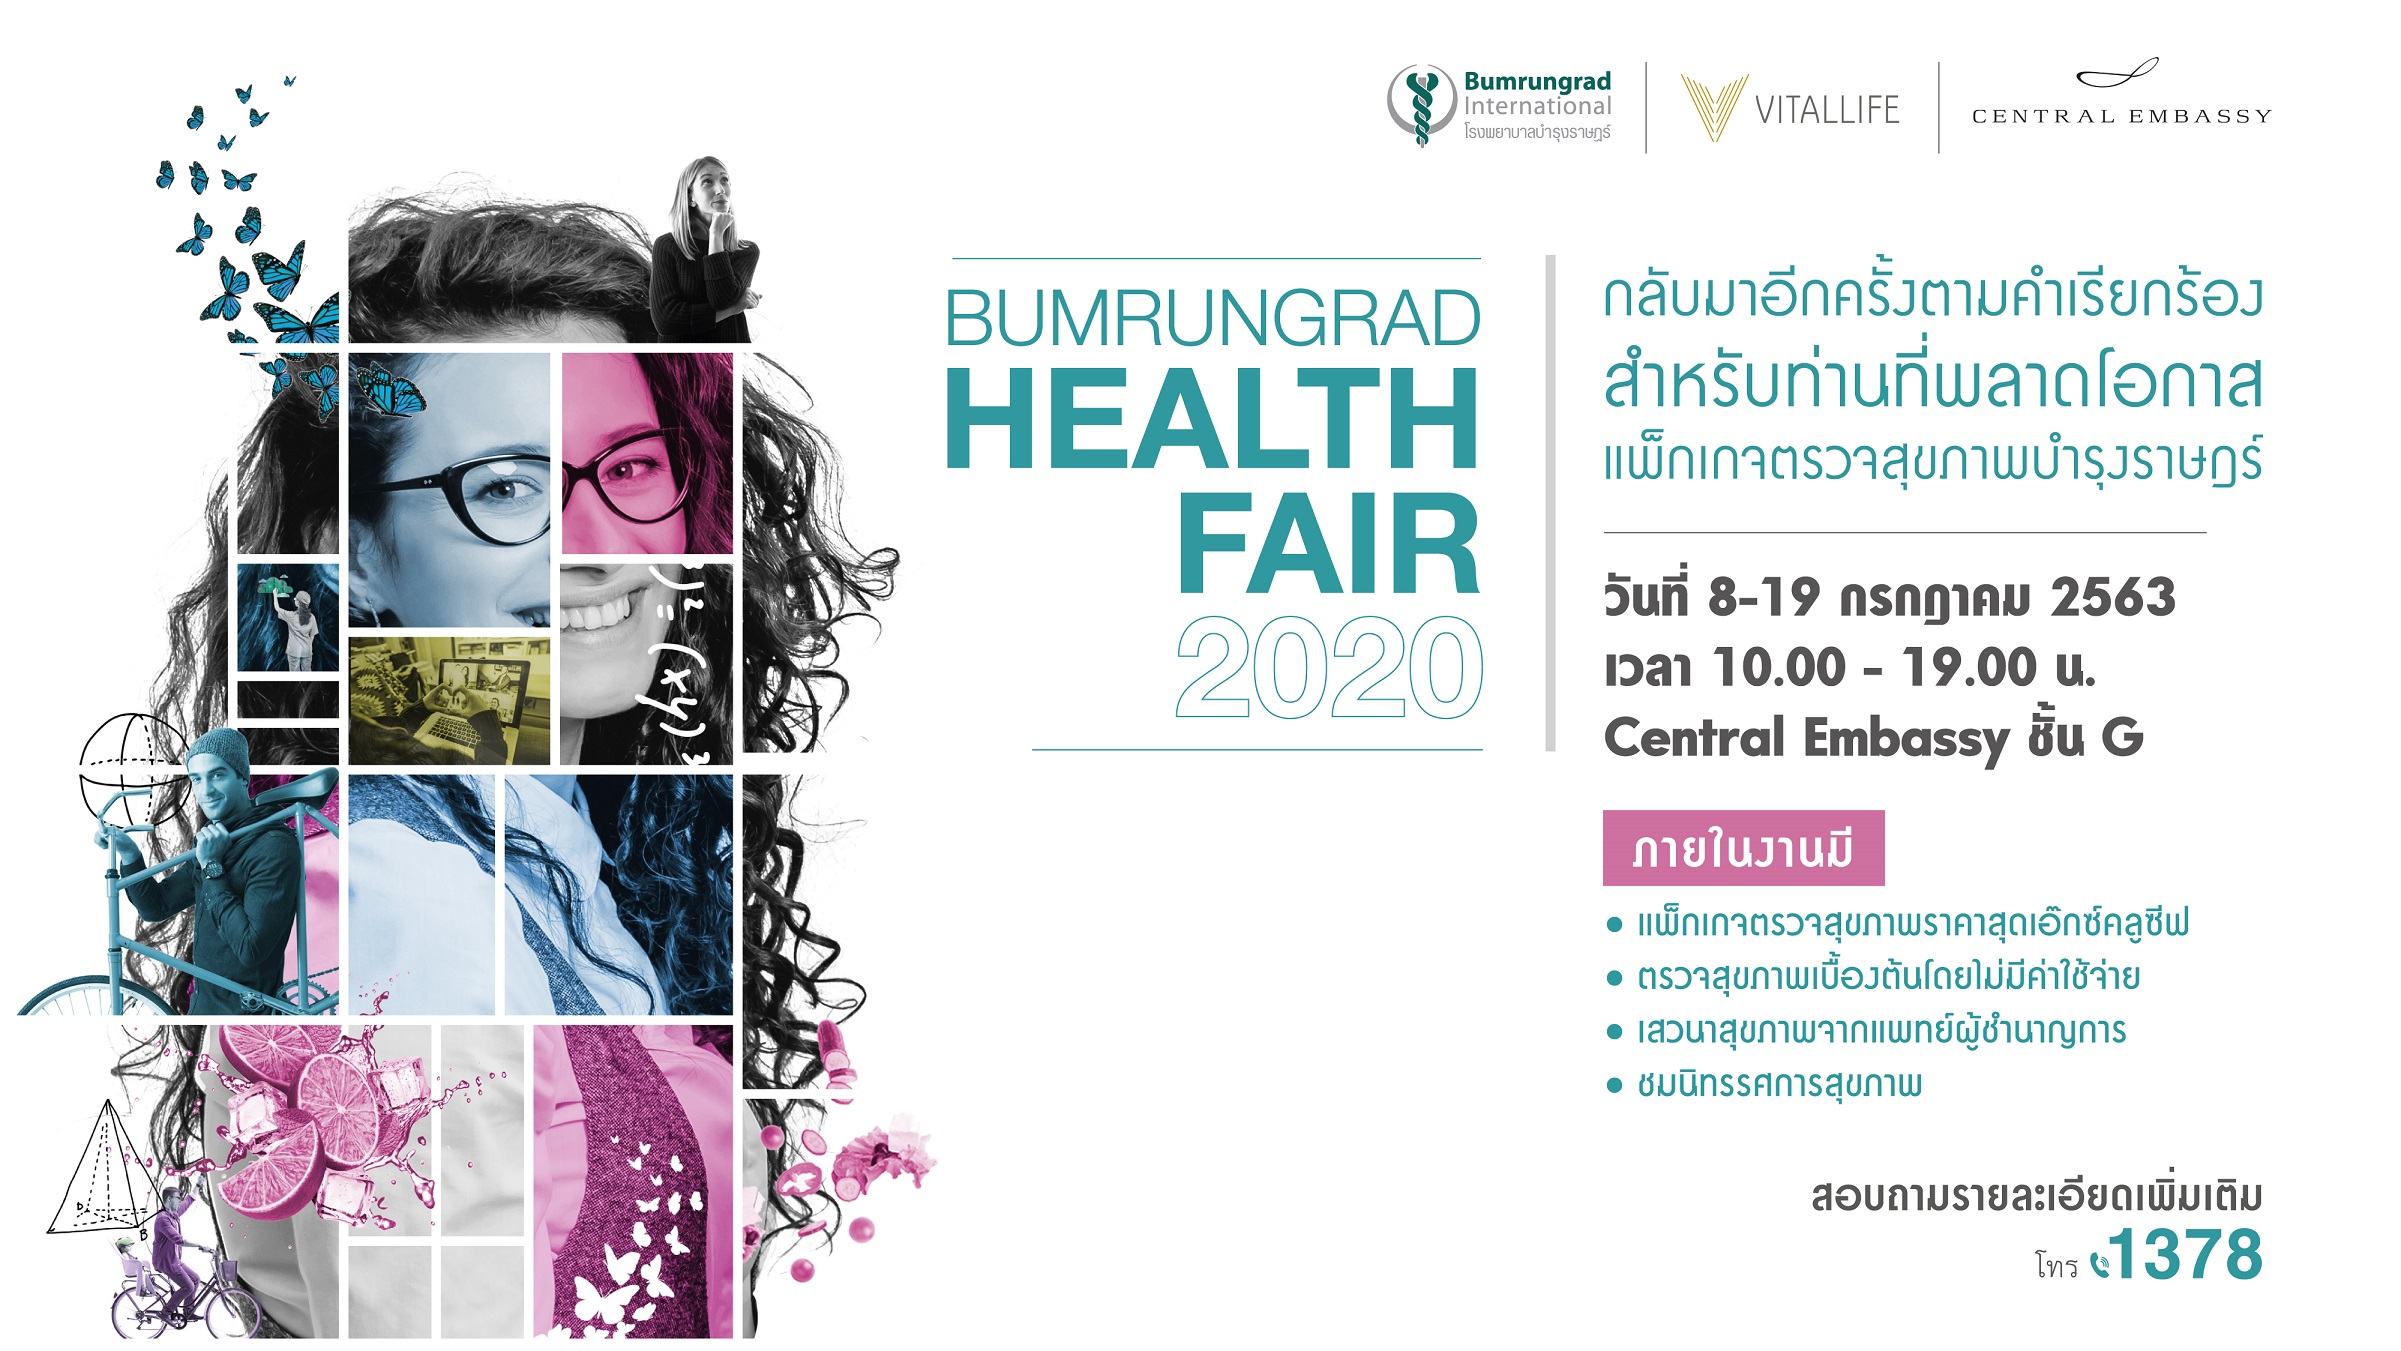 8 19 กรกฎาคมนี้ บำรุงราษฎร์จัดมหกรรมสุขภาพ Bumrungrad Health Fair 2020 เอาใจคนรักสุขภาพยุค new normal